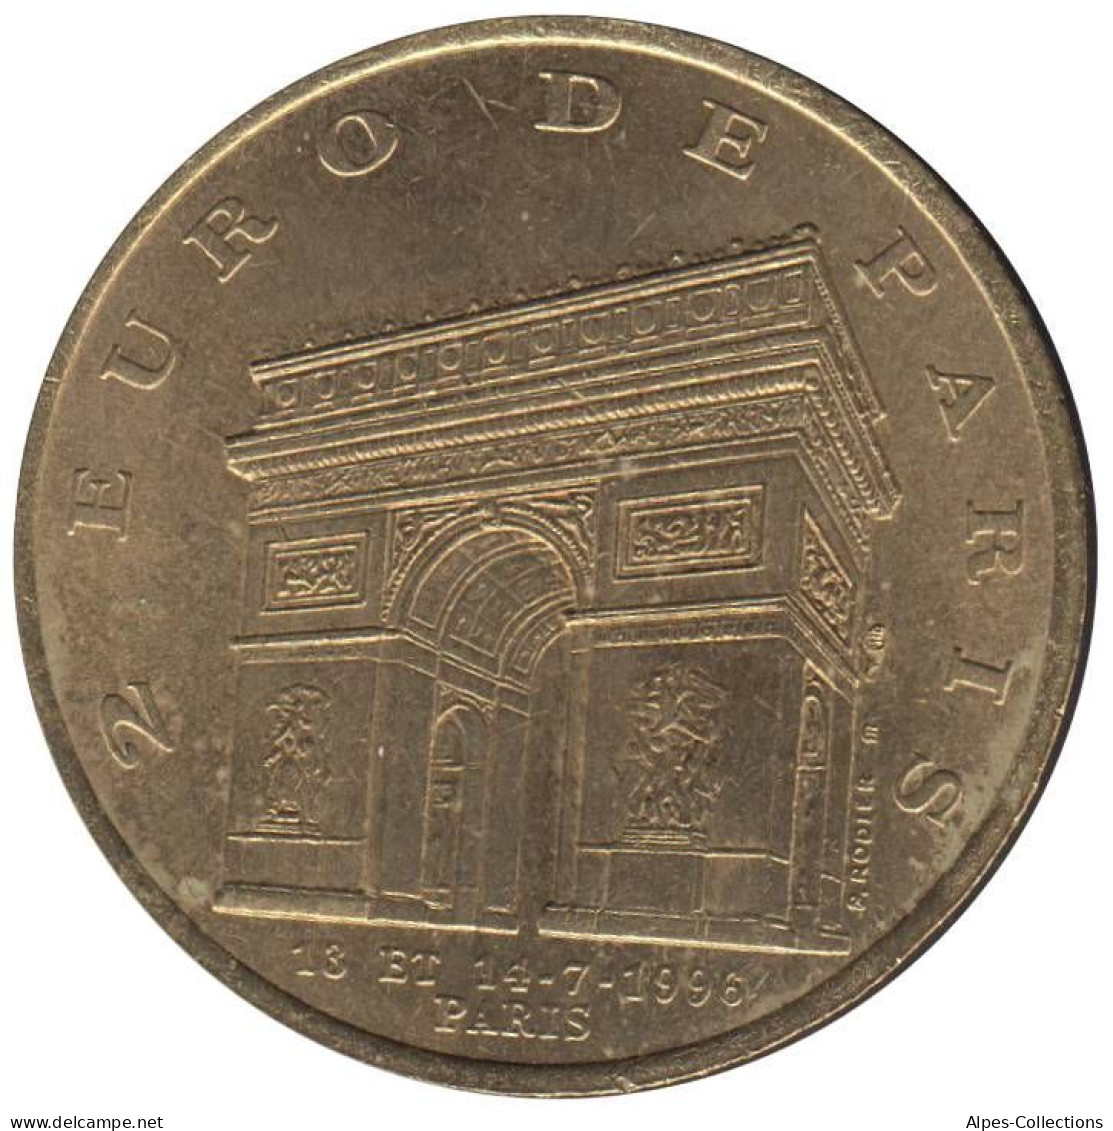 PARIS - EU0020.1 - 2 EURO DES VILLES - Réf: T194 - 1996 - Euros Of The Cities